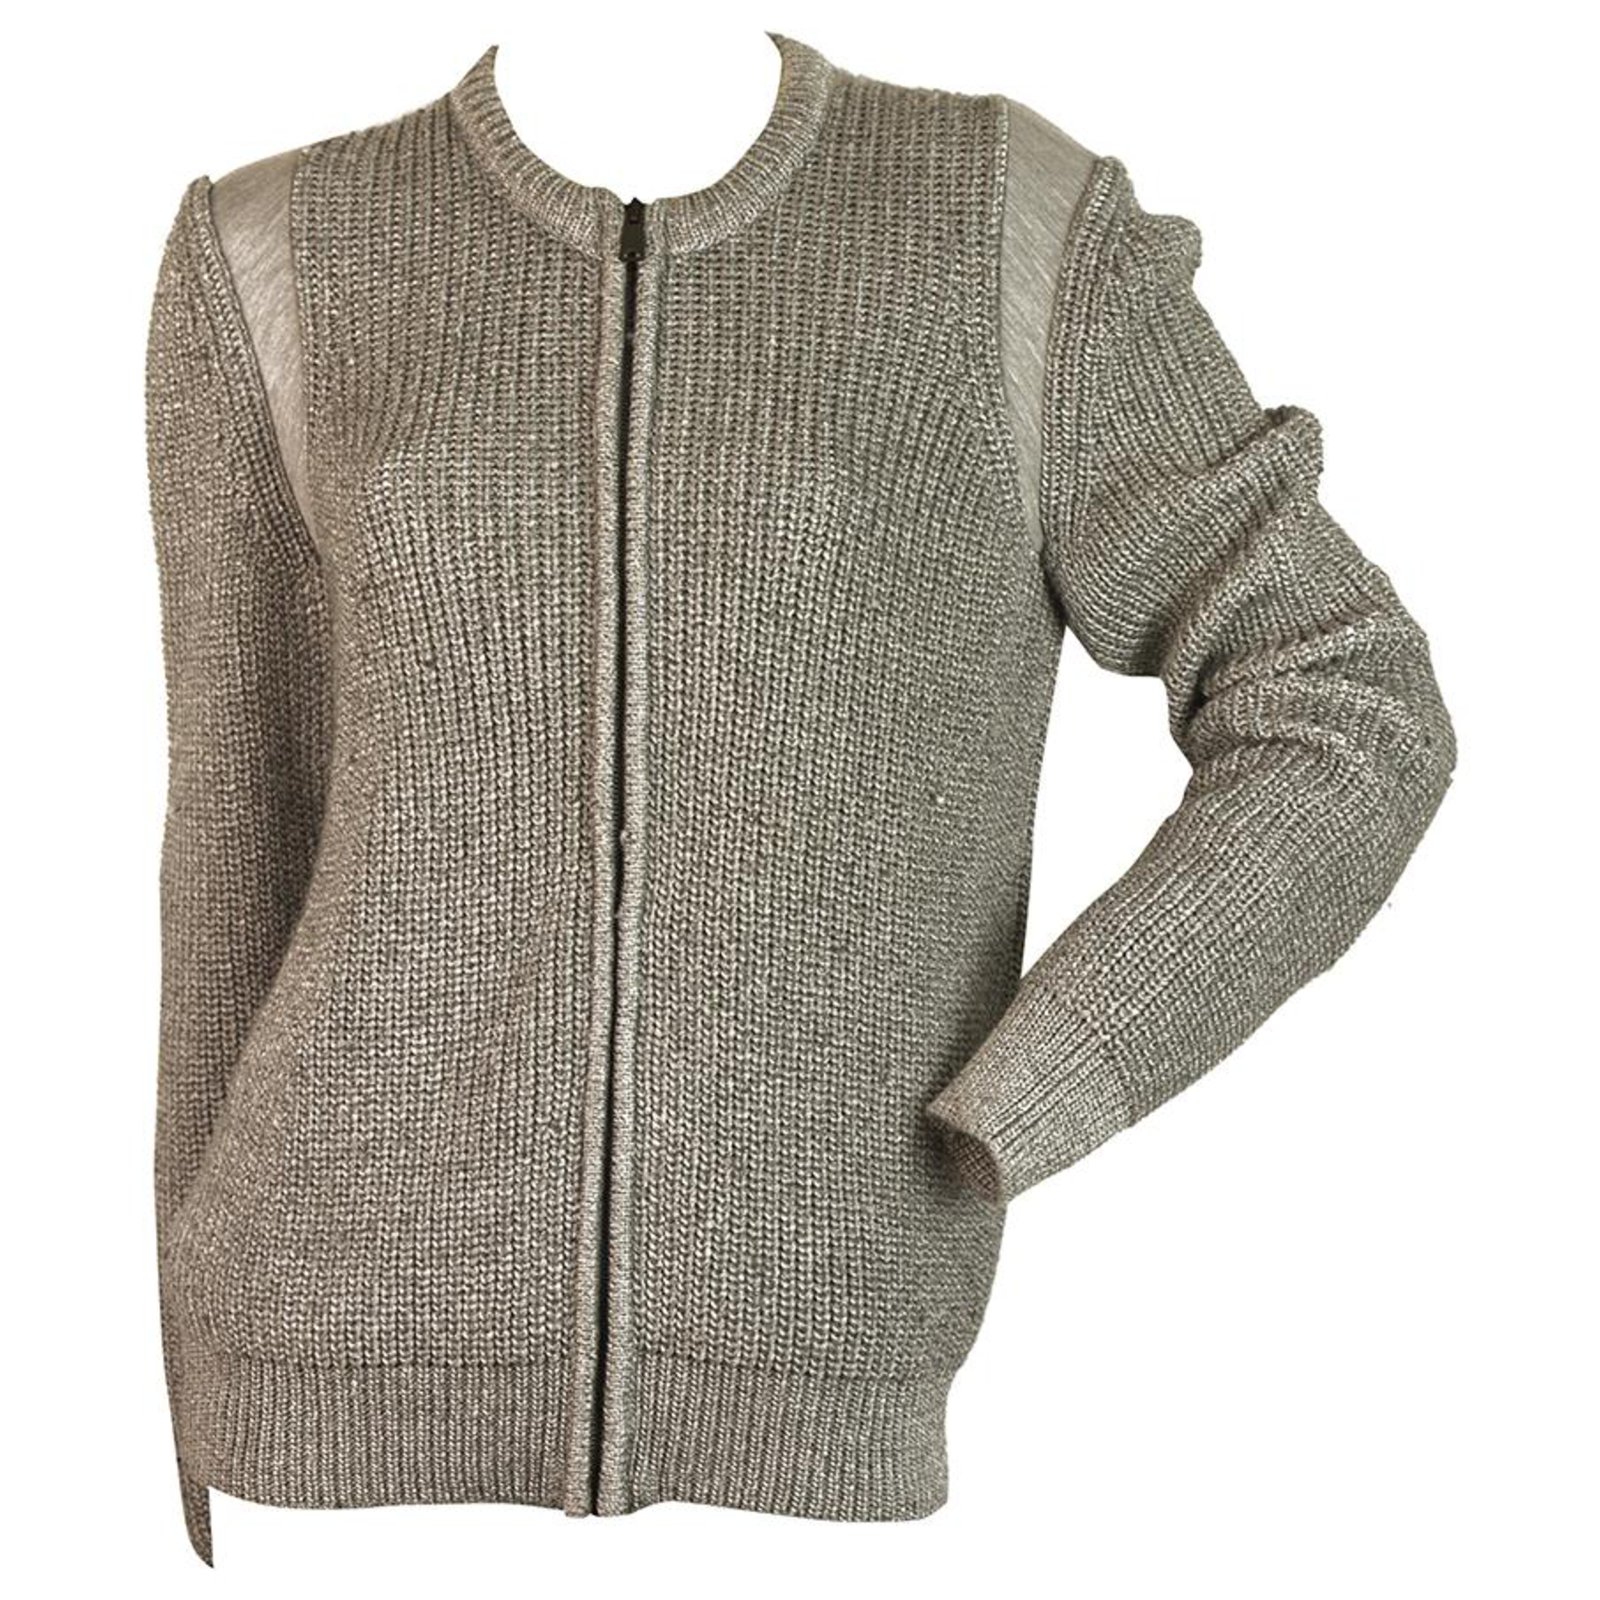 balenciaga gray sweater